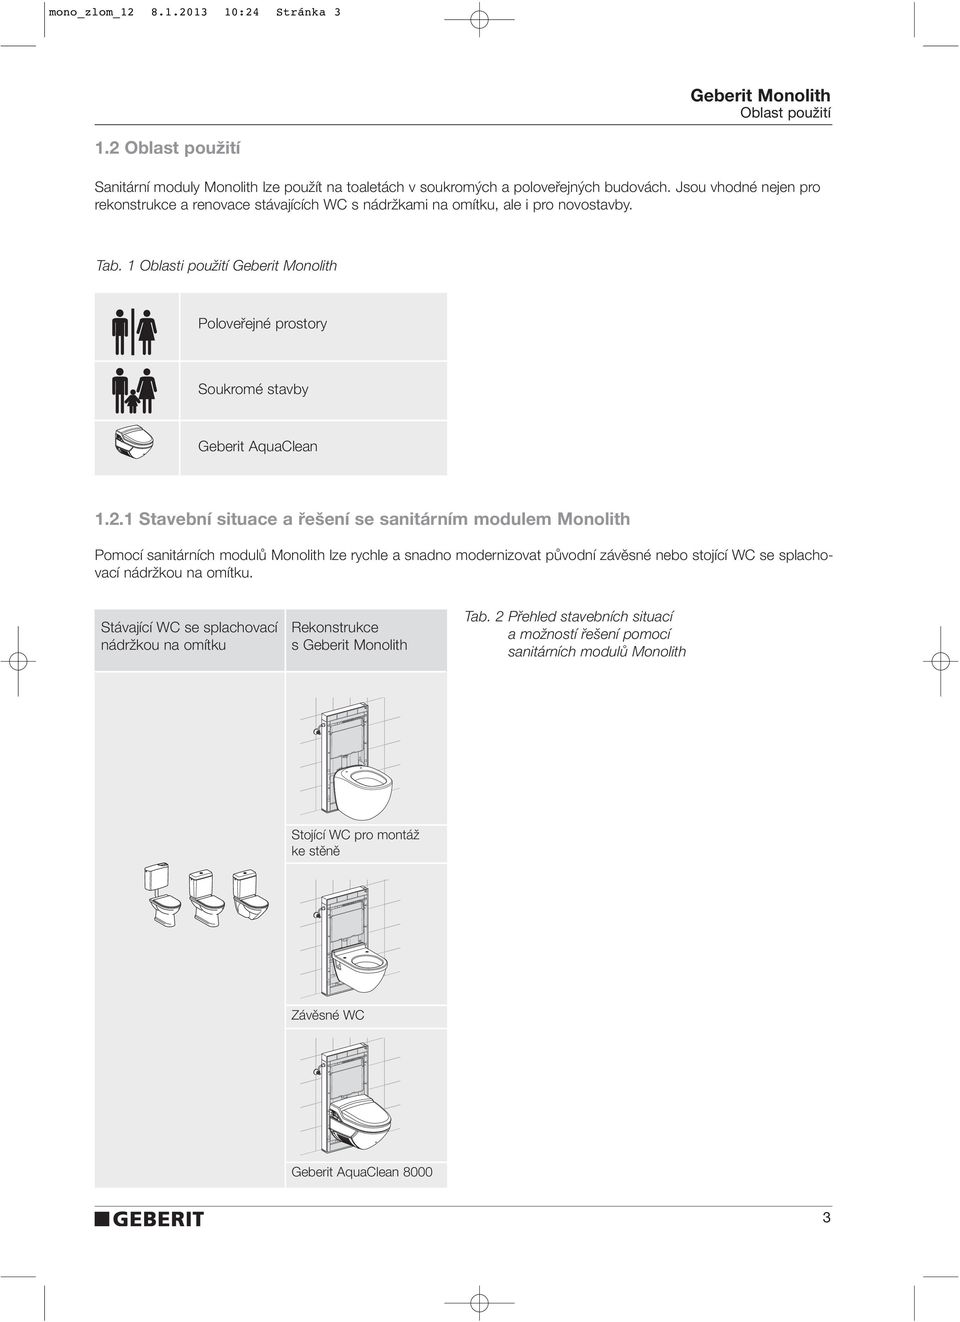 1 Stavební situace a řešení se sanitárním modulem Monolith Pomocí sanitárních modulû Monolith lze rychle a snadno modernizovat pûvodní závûsné nebo stojící WC se splachovací nádrïkou na